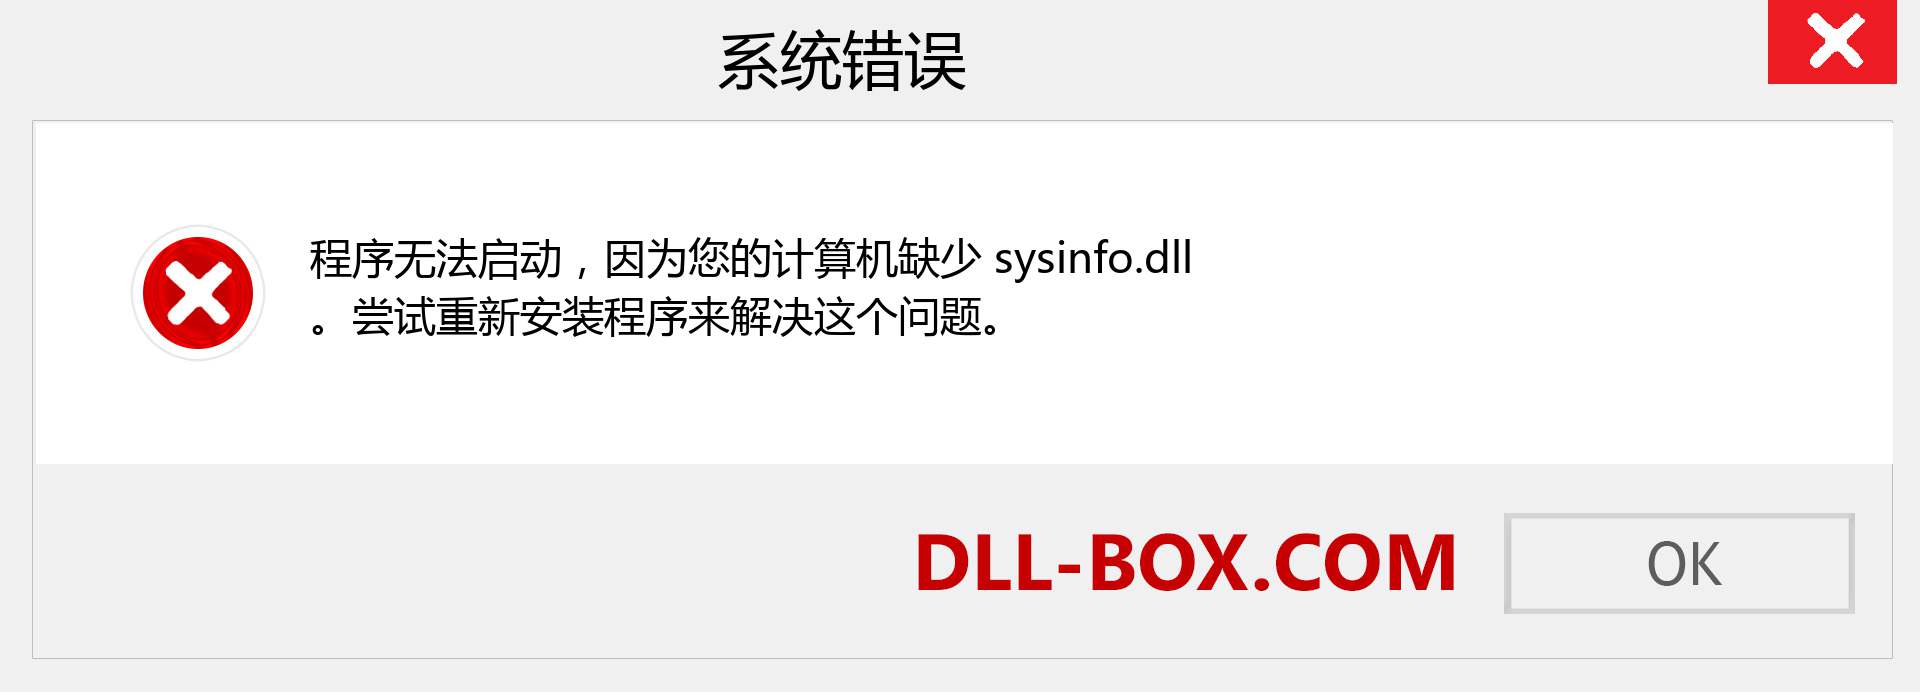 sysinfo.dll 文件丢失？。 适用于 Windows 7、8、10 的下载 - 修复 Windows、照片、图像上的 sysinfo dll 丢失错误